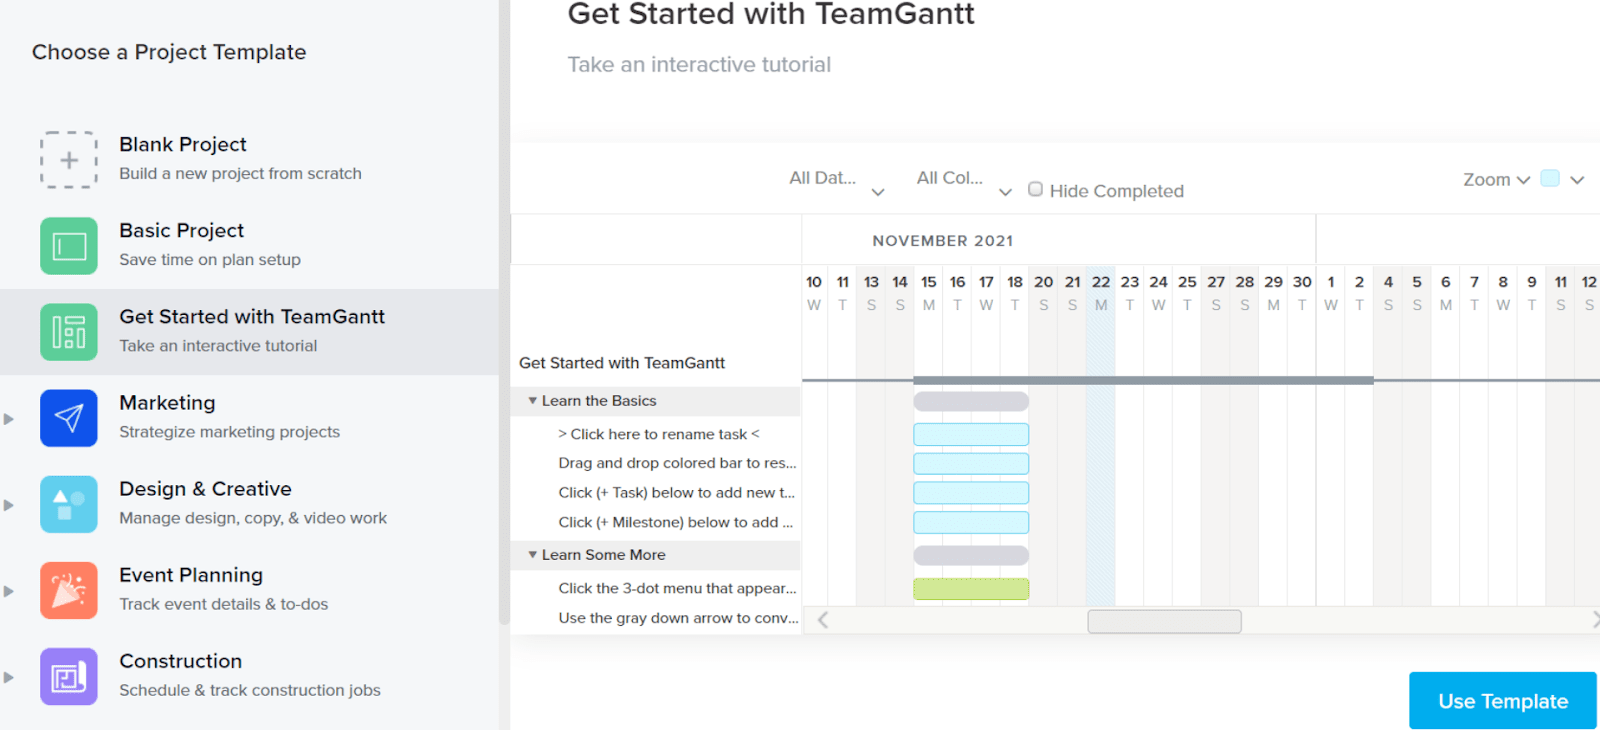 teamGantt-get-started-template